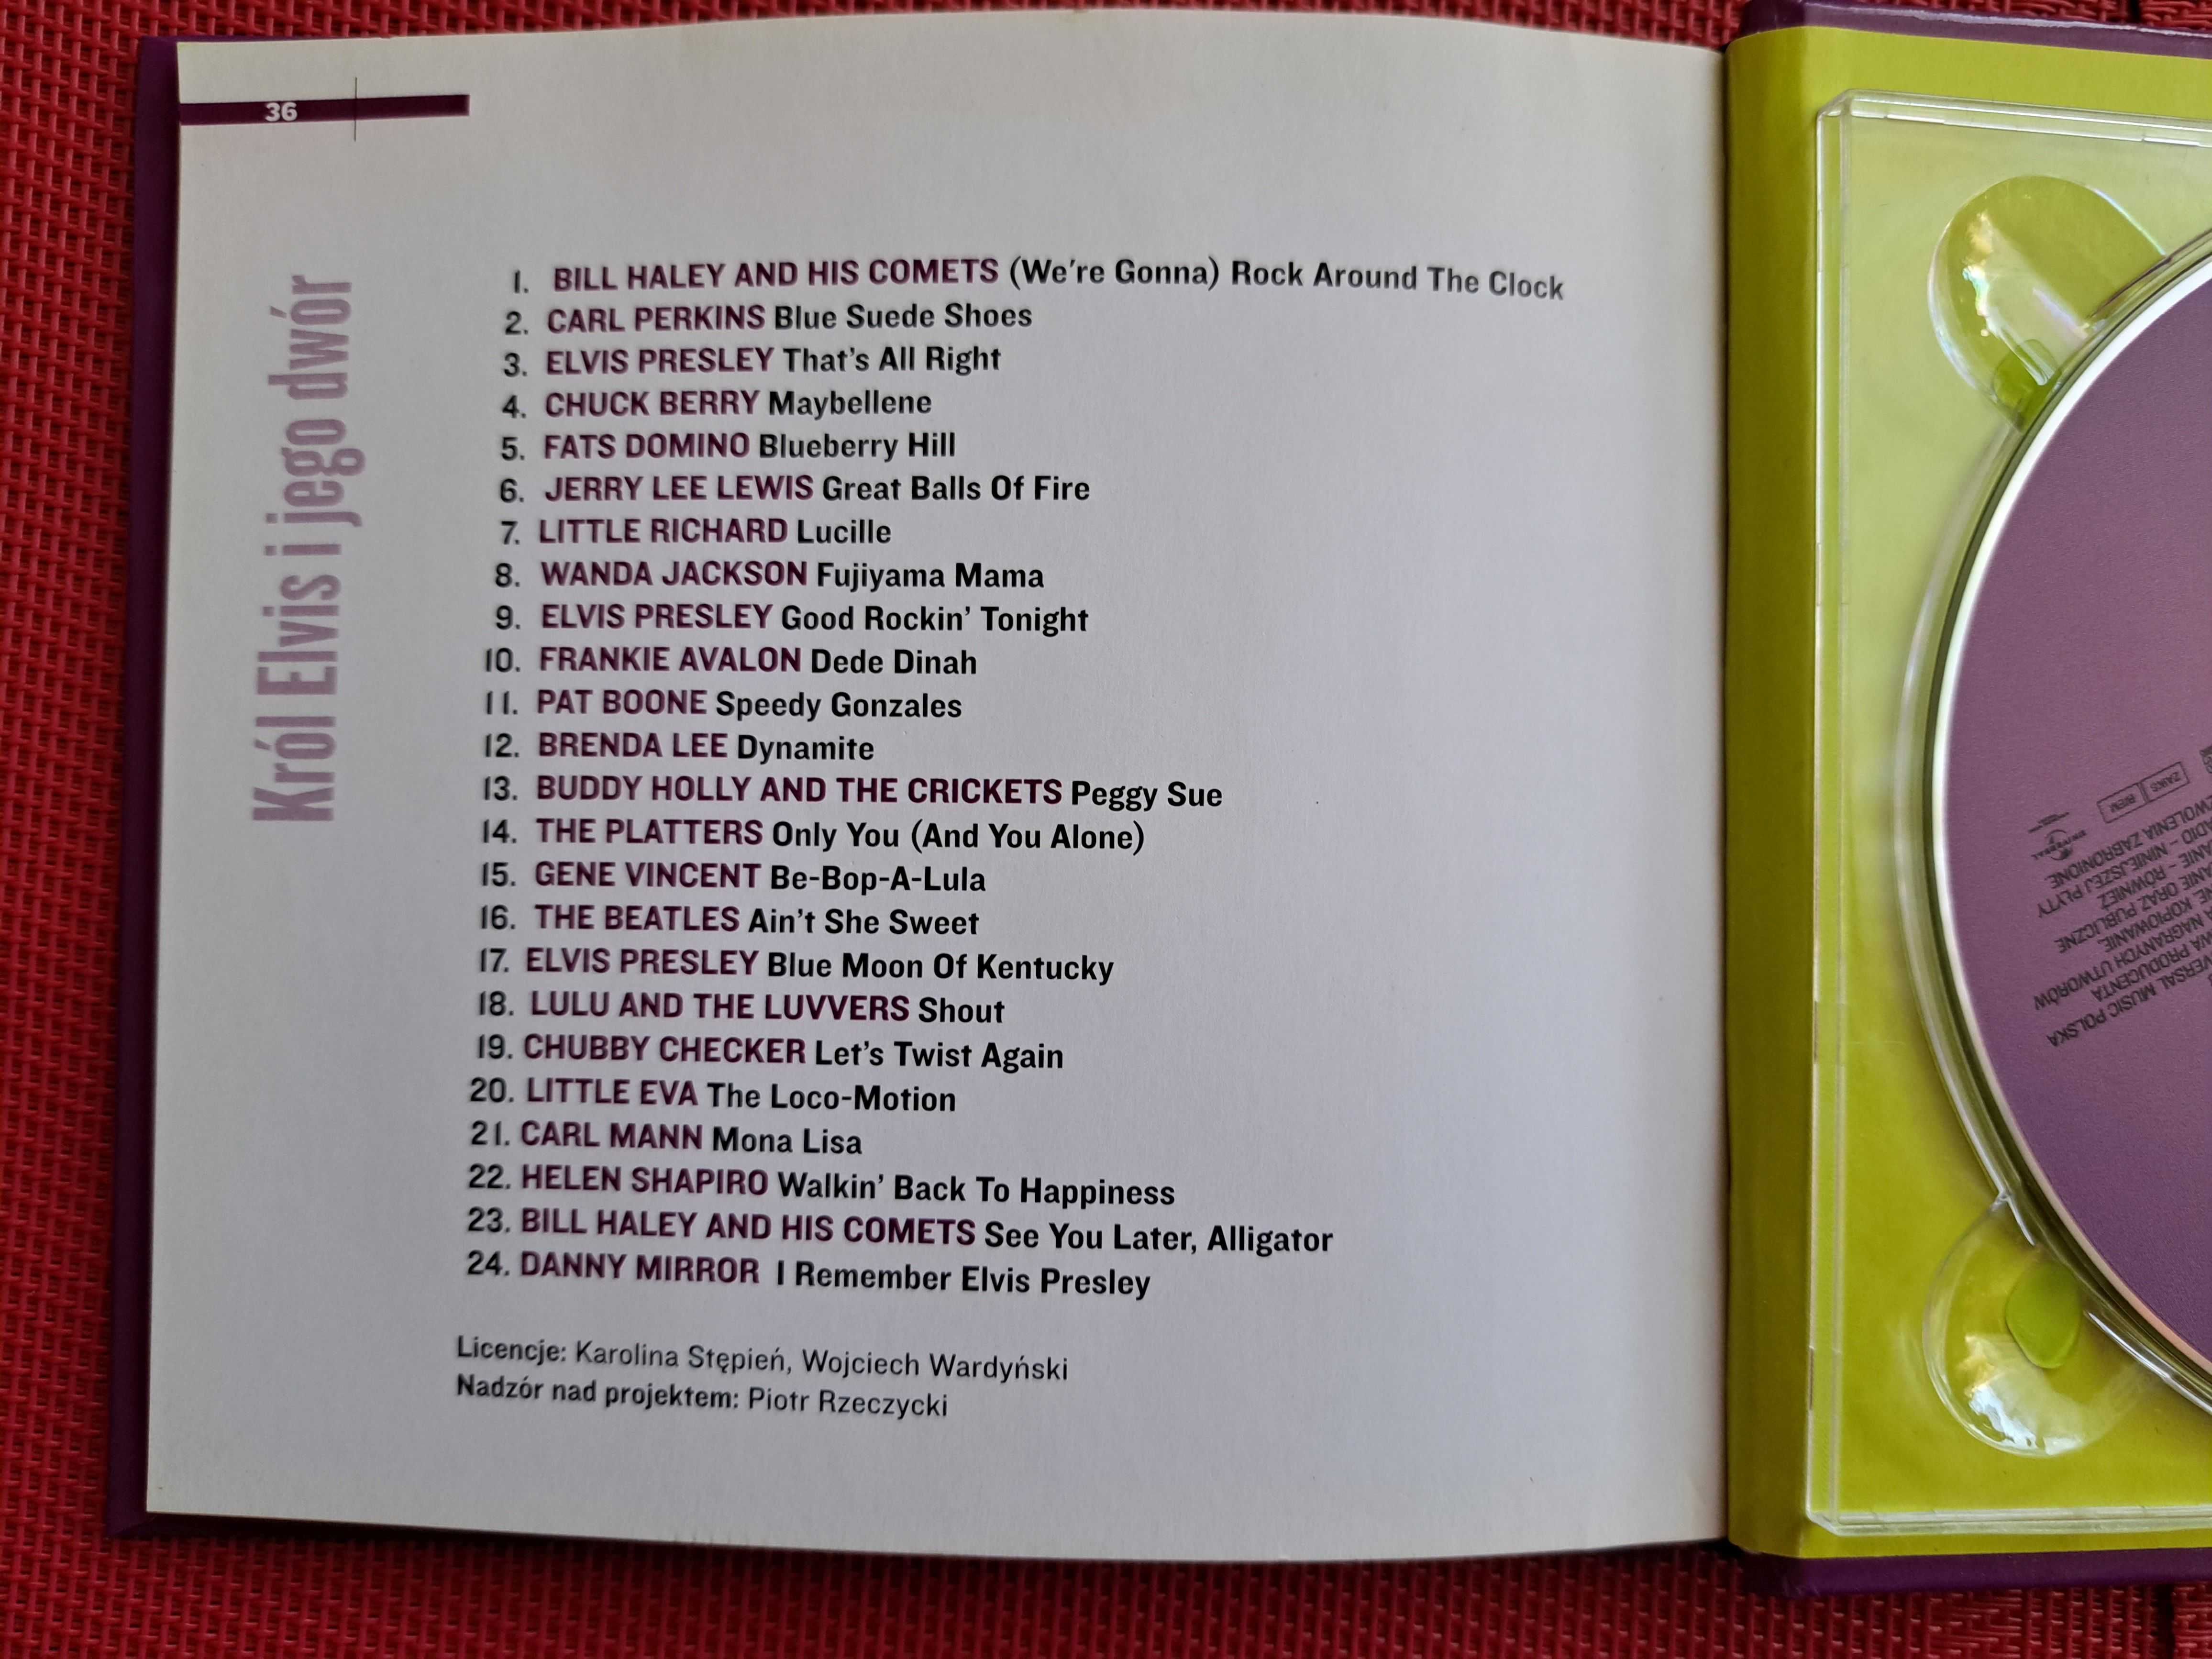 Król Elvis i jego dwór płyta CD